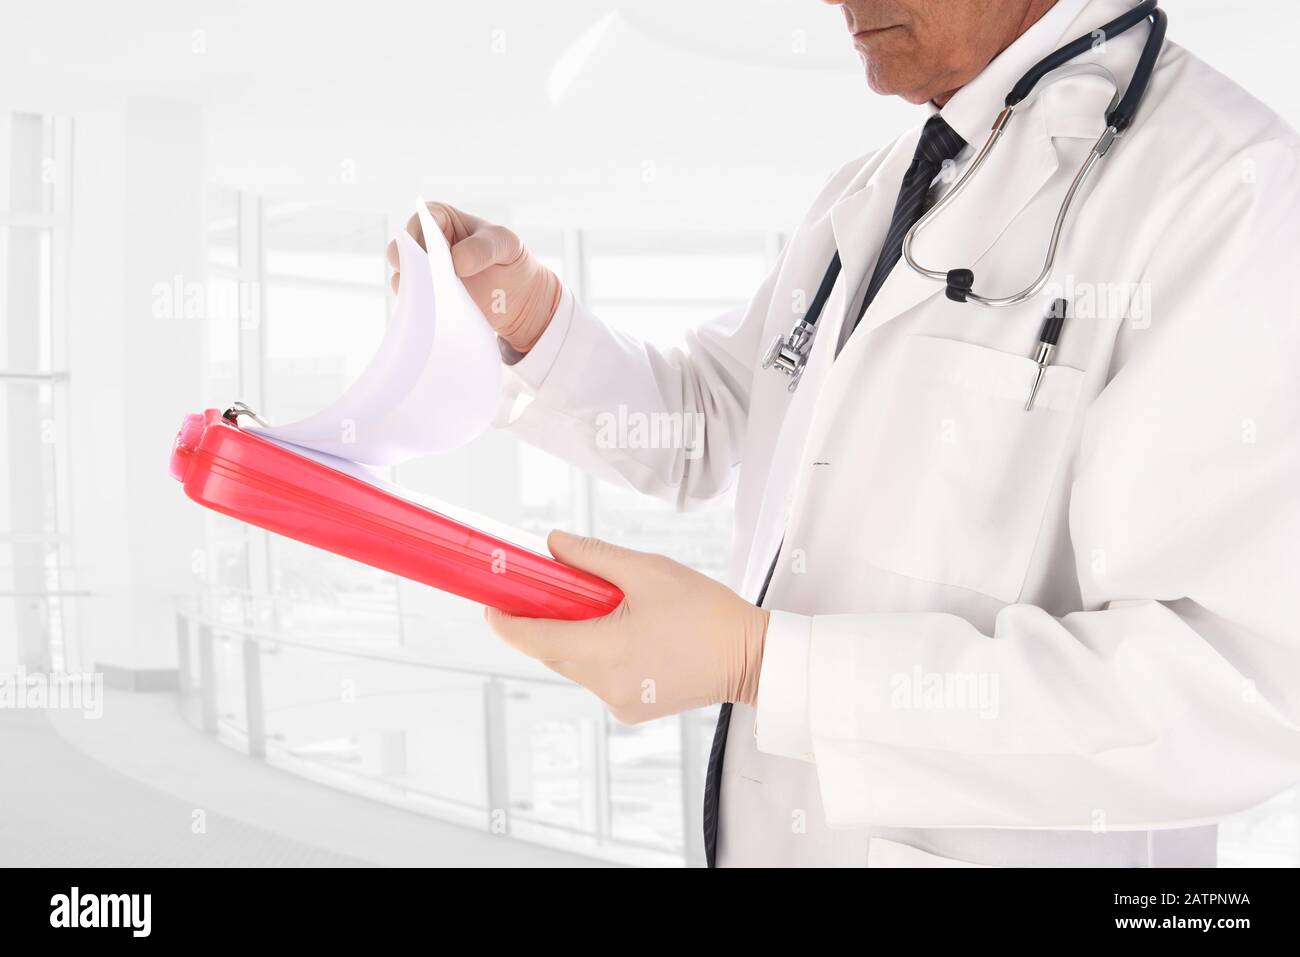 Nahaufnahme eines Arztes, der in einer modernen medizinischen Einrichtung steht. Der Mann hält einen Patienten in der Krankengeschichte und hält ein Diagramm in seinen Händen. Stockfoto